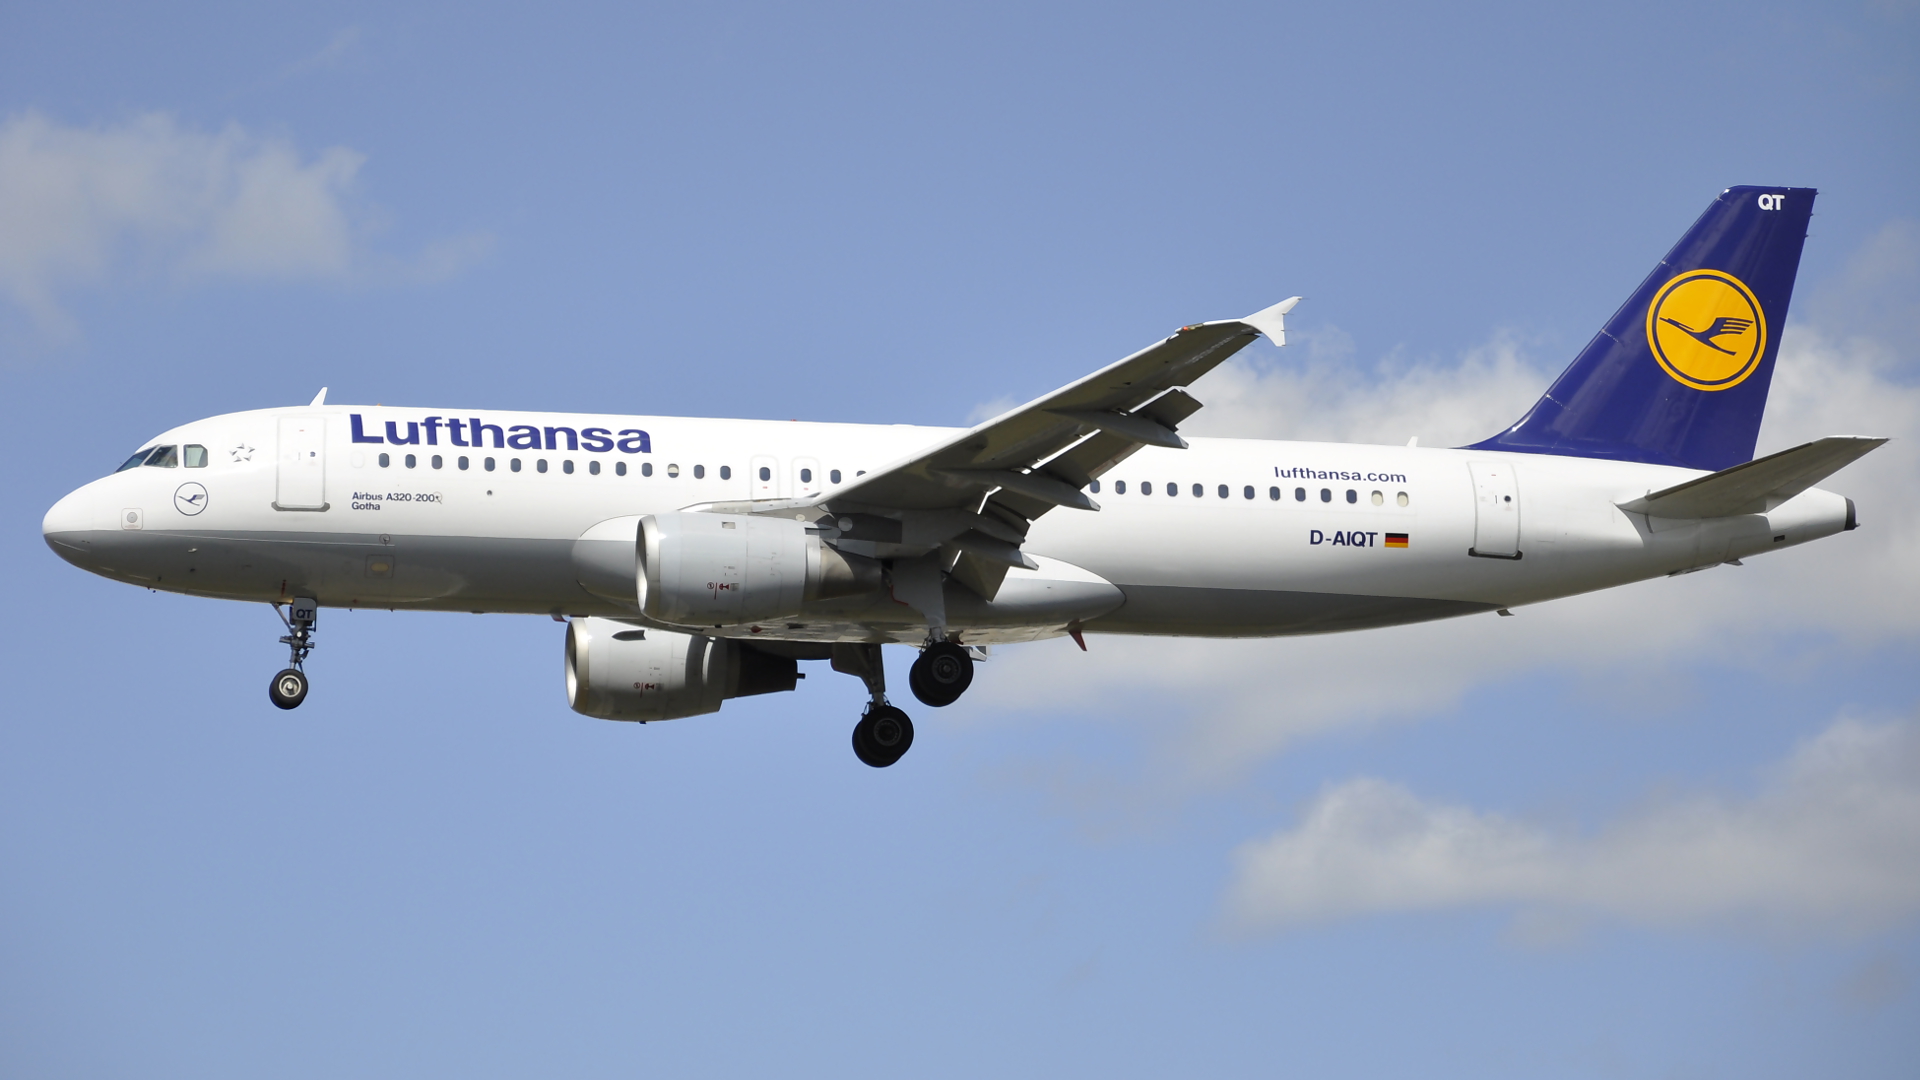 D-AIQT ✈ Lufthansa Airbus 320-211 @ London-Heathrow